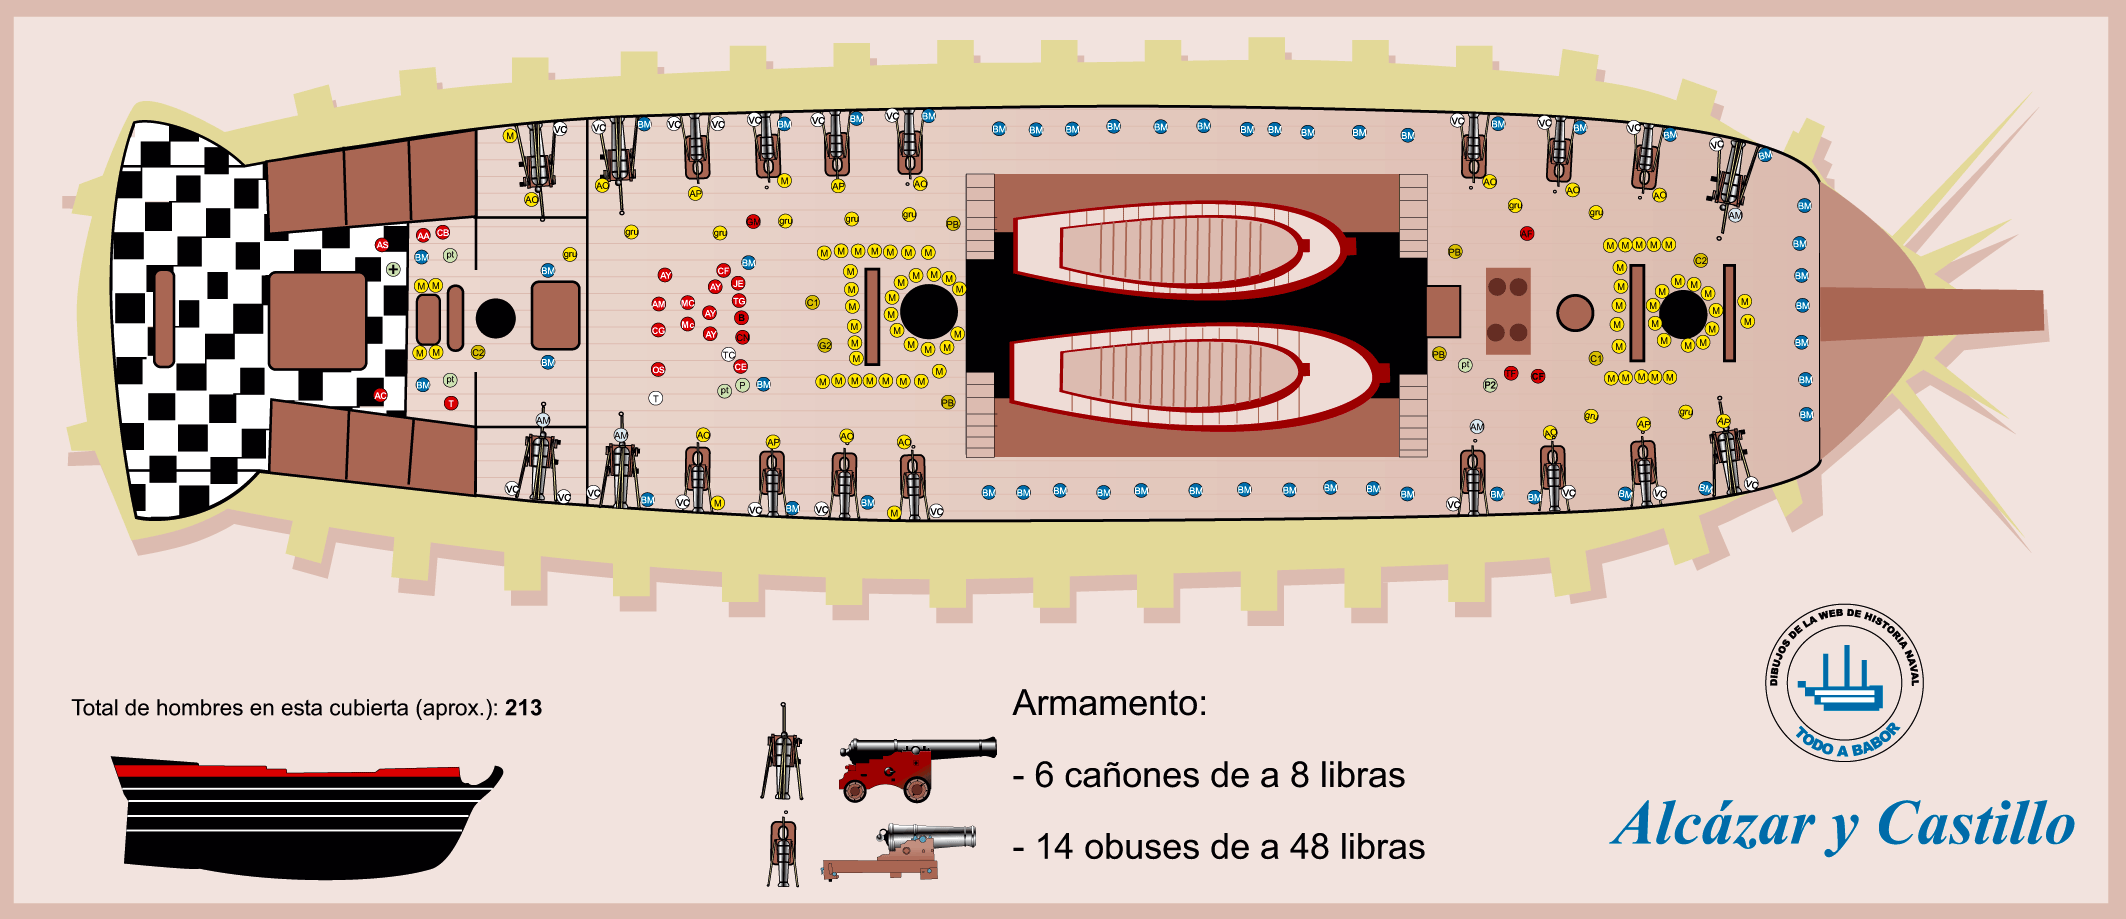 El navío español de tres puentes y 112 cañones. Guía visual